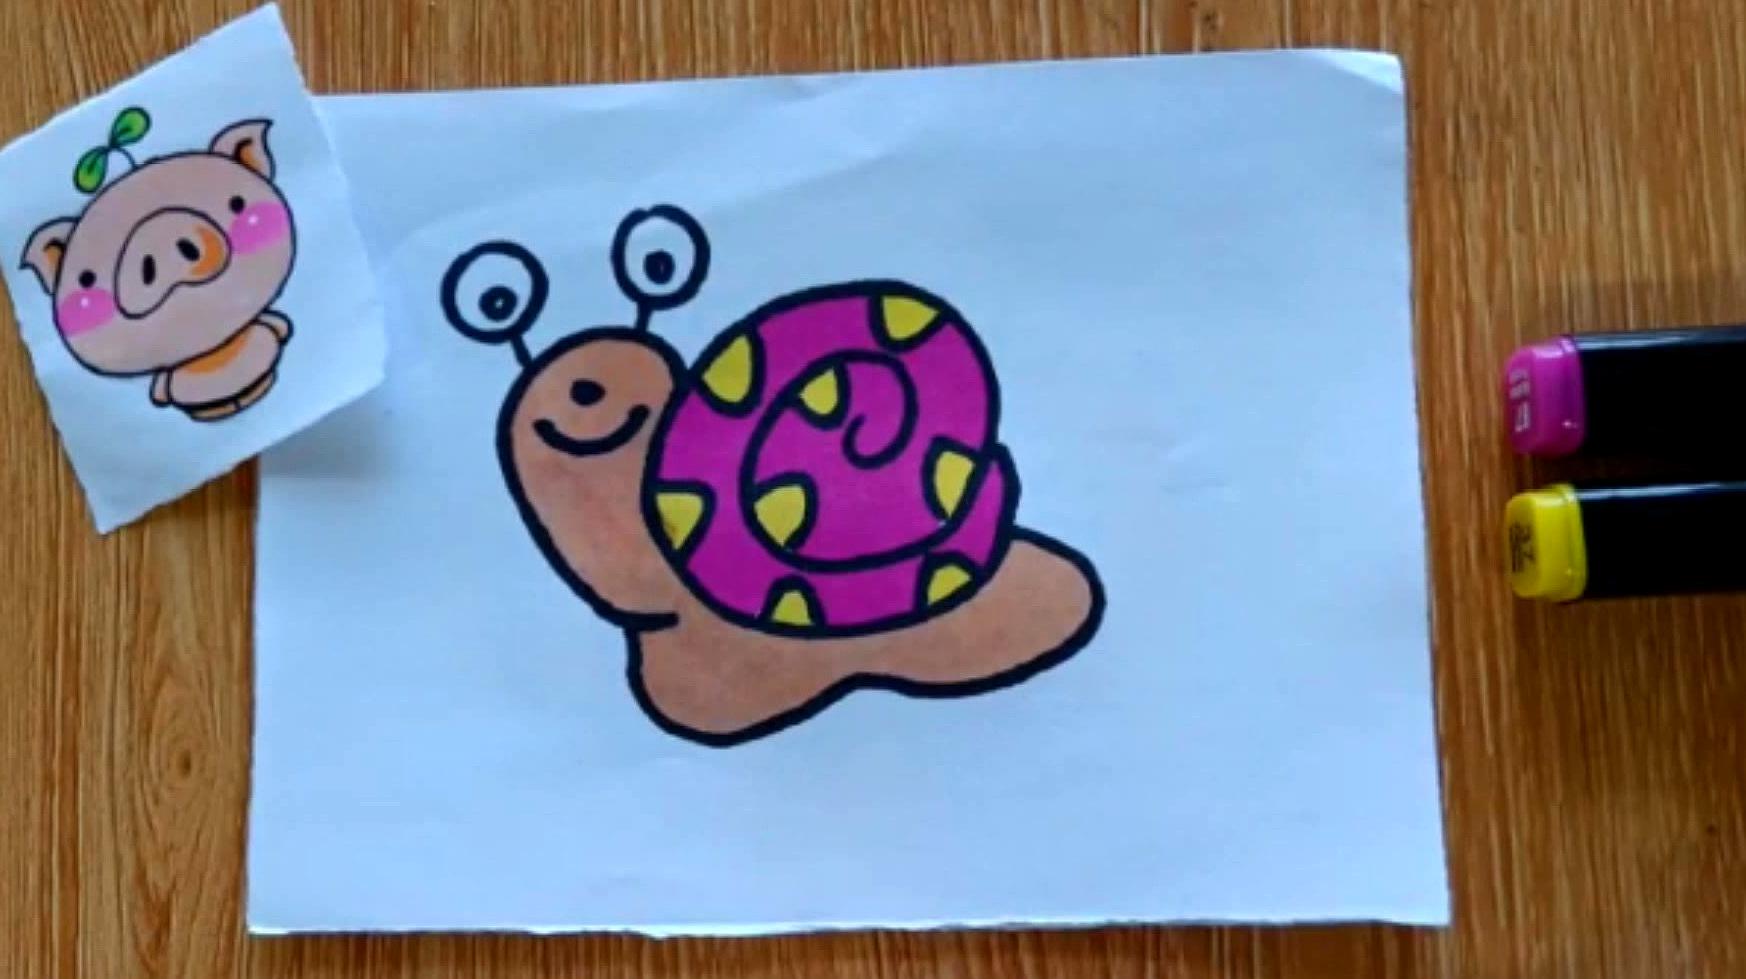 儿童简笔画涂色教程,宝宝一看就会画,快来给小蜗牛涂颜色吧